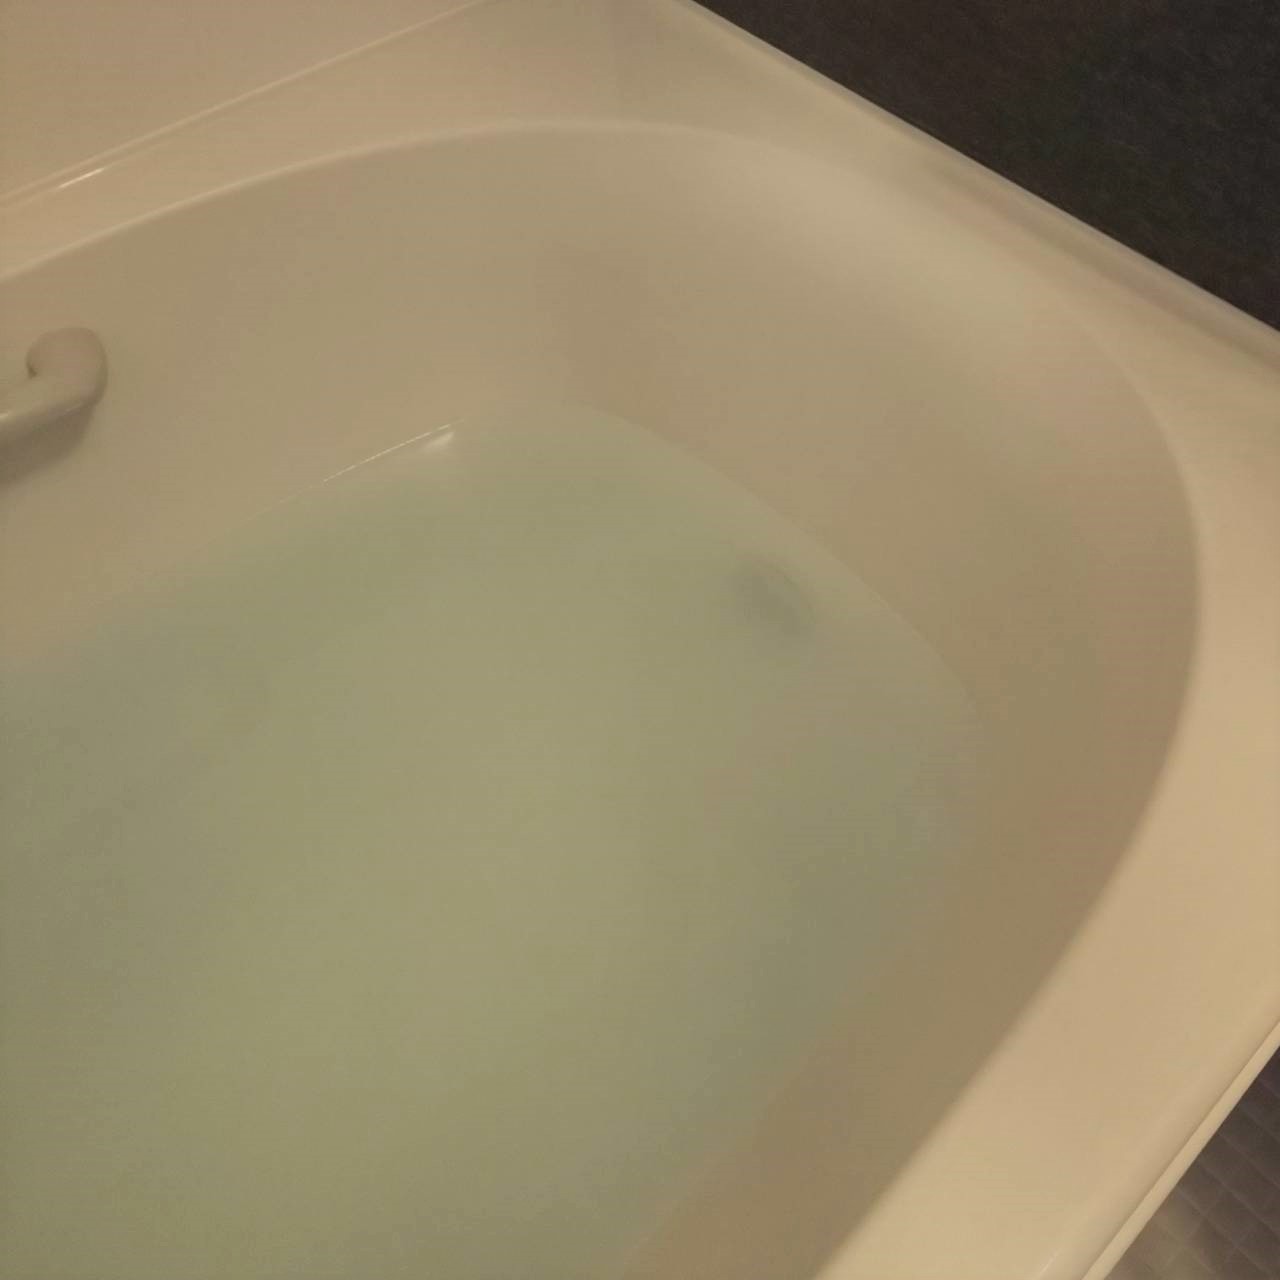 釜 過 炭酸 ナトリウム 風呂 風呂釜掃除の仕方！酸素系漂白剤を使った簡単で安全なやり方とは？ [掃除]